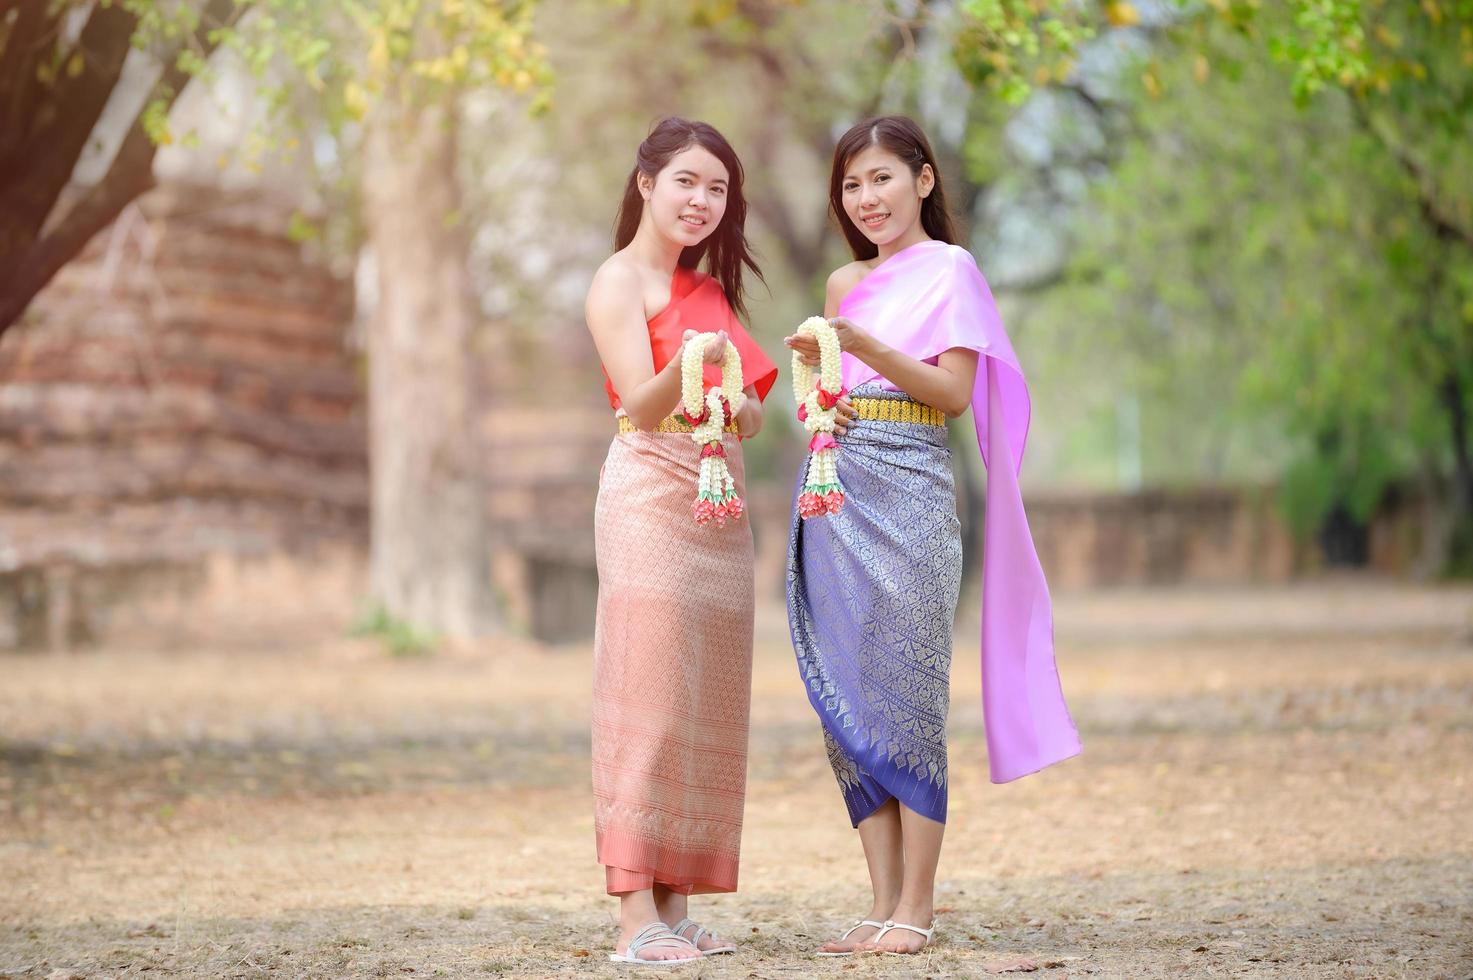 donne tailandesi attraenti nel tradizionale abito tailandese tengono ghirlande di fiori freschi per entrare in un tempio basato sulla tradizione del festival di songkran in tailandia foto